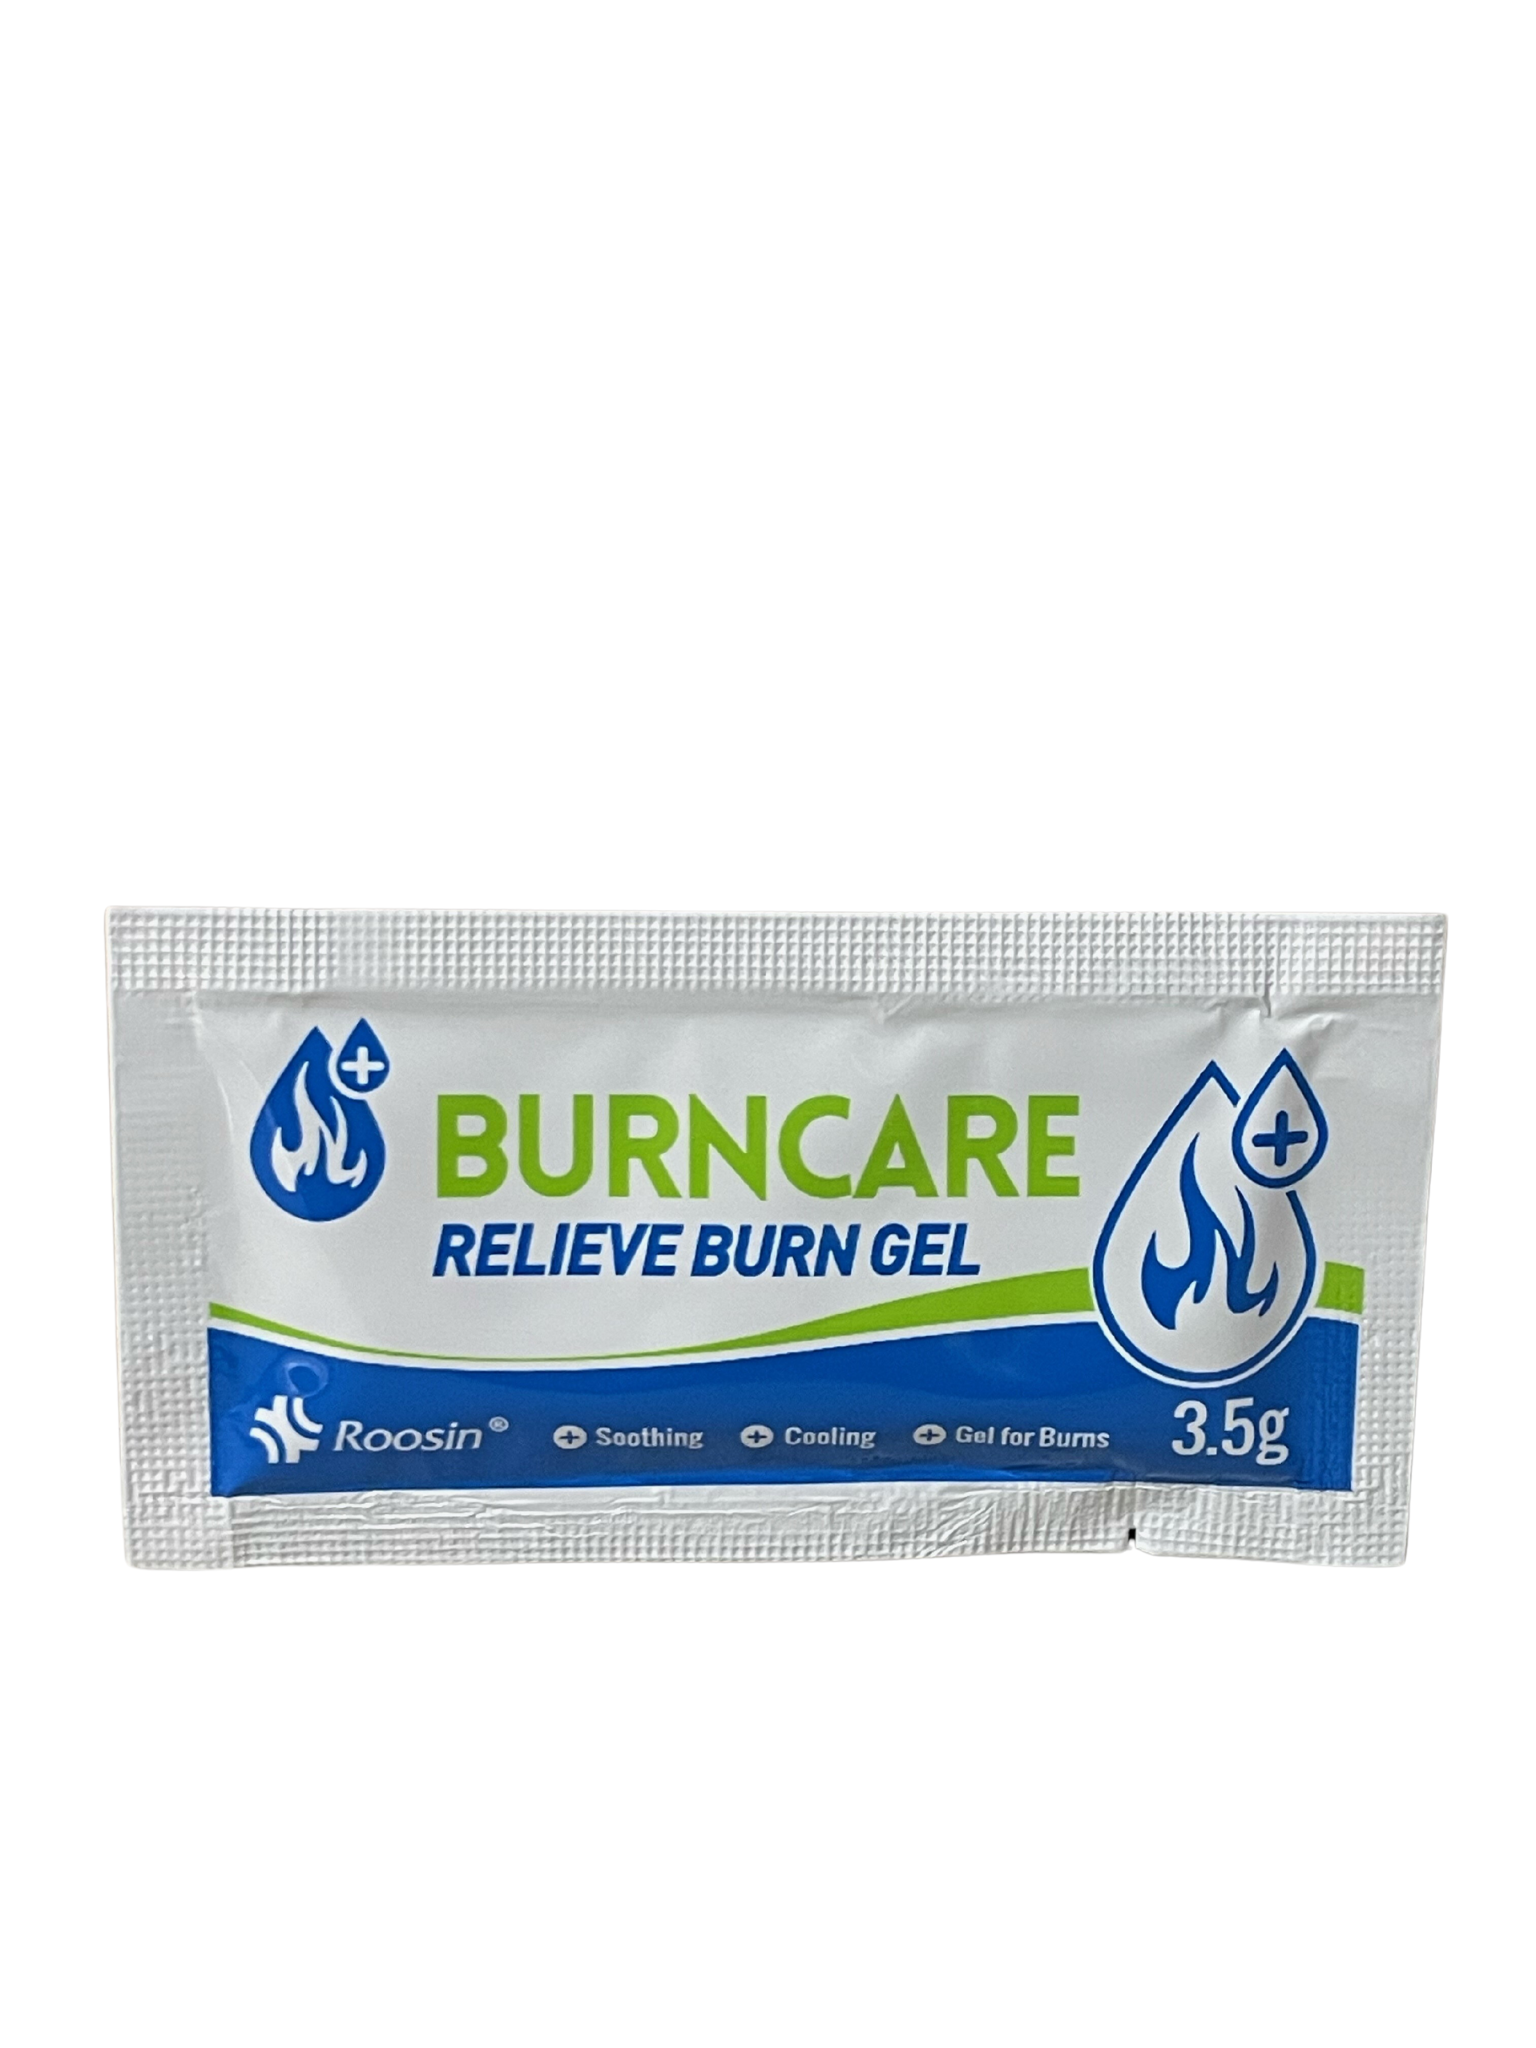 Burn Free Hydrogel Burn Gel • First Aid Supplies Online % %